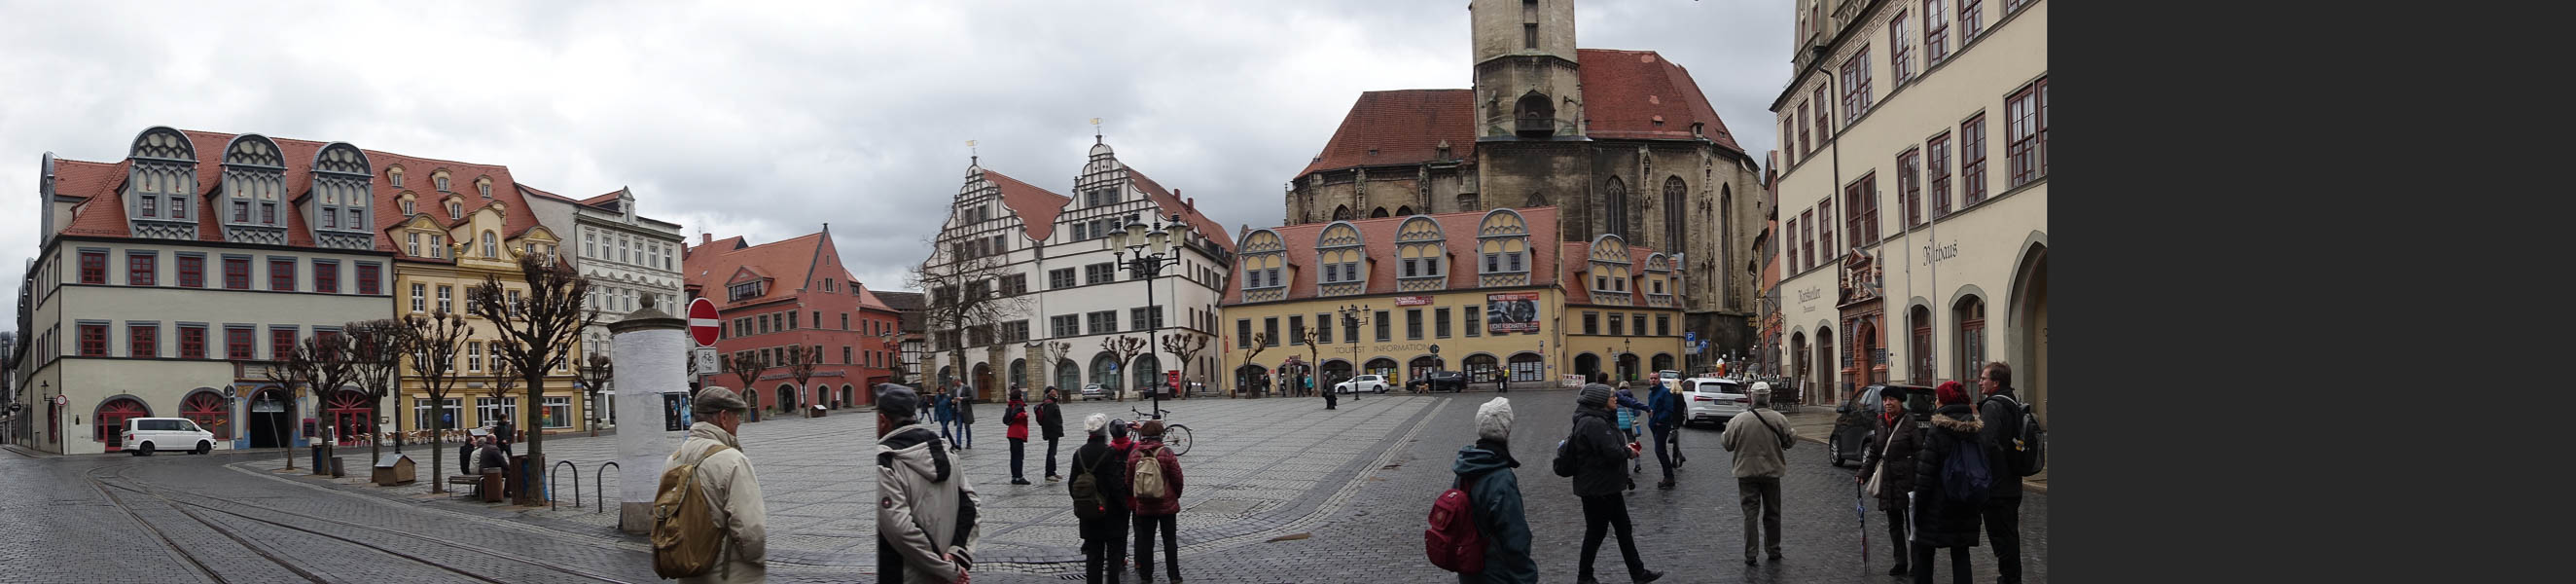 Der Markt mit alten Straßenbahnschienen, historischer Bausubstanz, Wenzelskirche und Rathaus im Überblick!